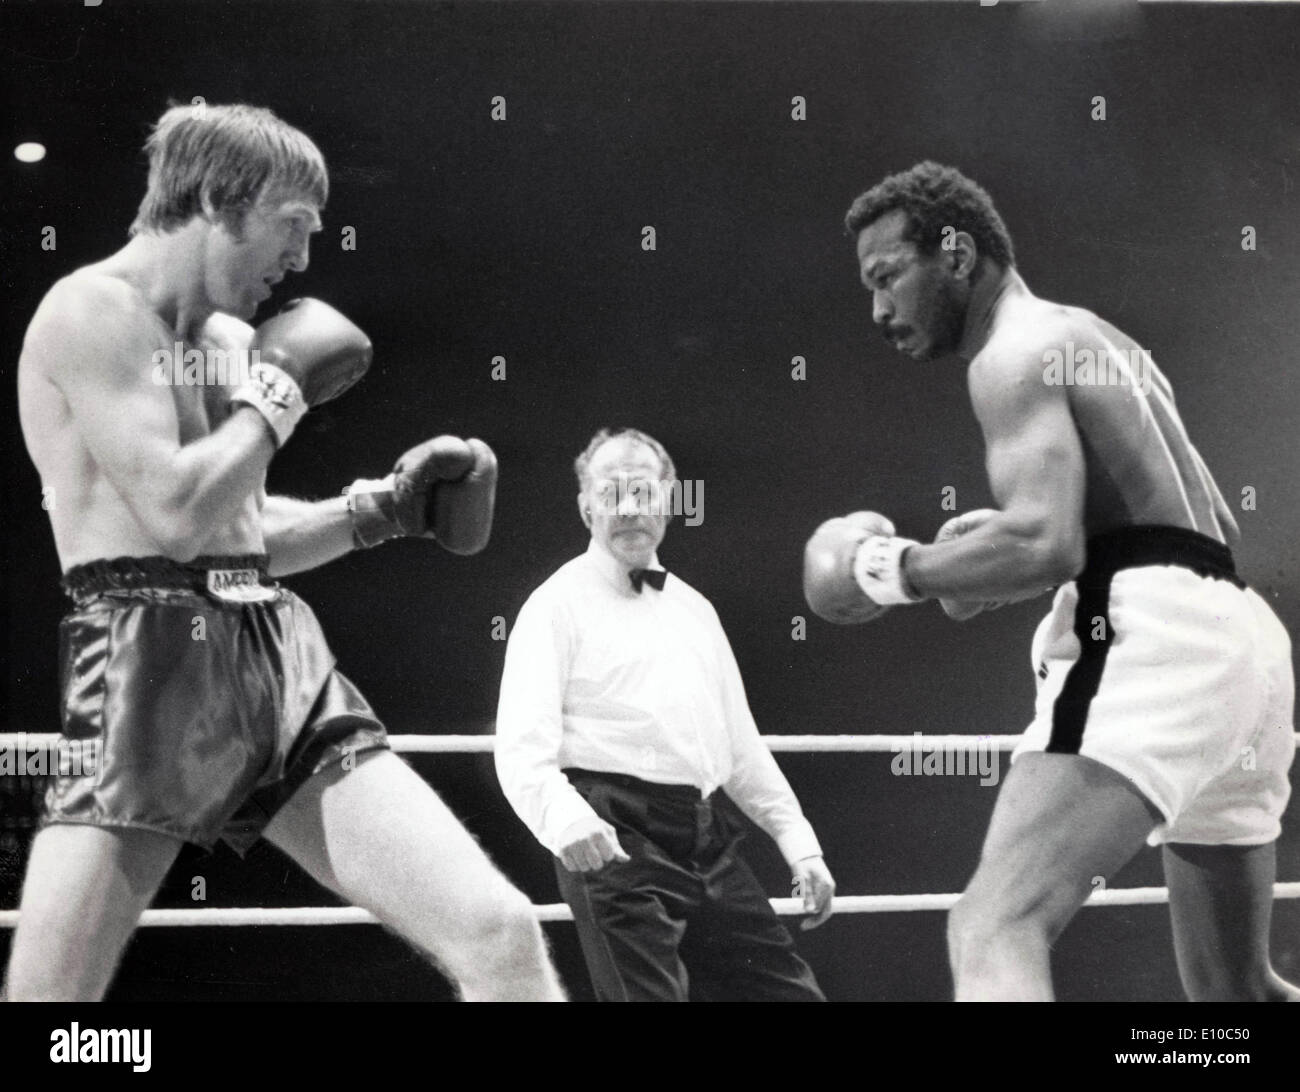 El campeón de boxeo de peso welter José Nápoles luchando contra el contendiente británico Ralph Charles durante su lucha por el título ,Wembley. Foto de stock